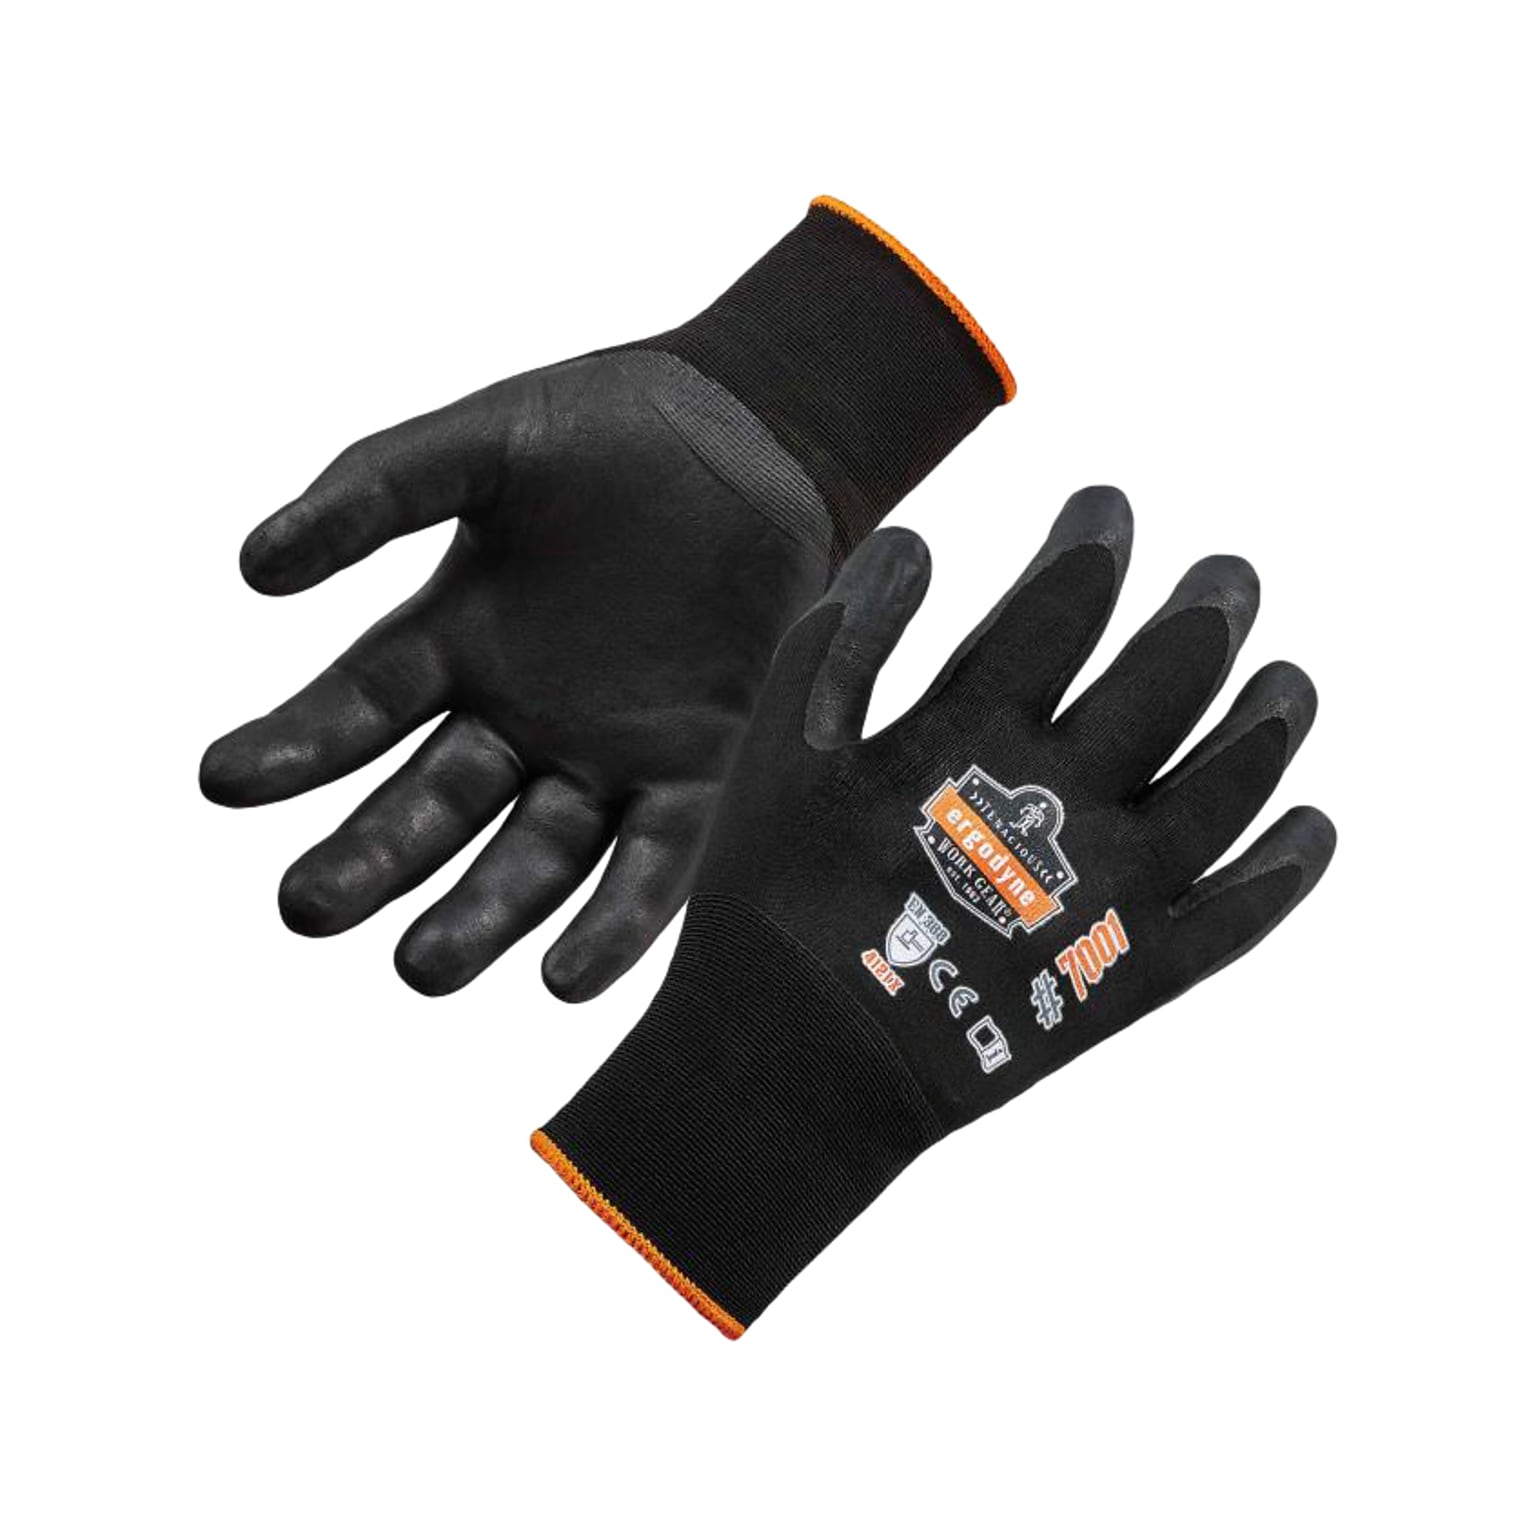 Ergodyne ProFlex 7001 Nitrile Coated Gloves, ANSI Level 3 Abrasion Resistance, Black, XL, 12 Pairs (17955)